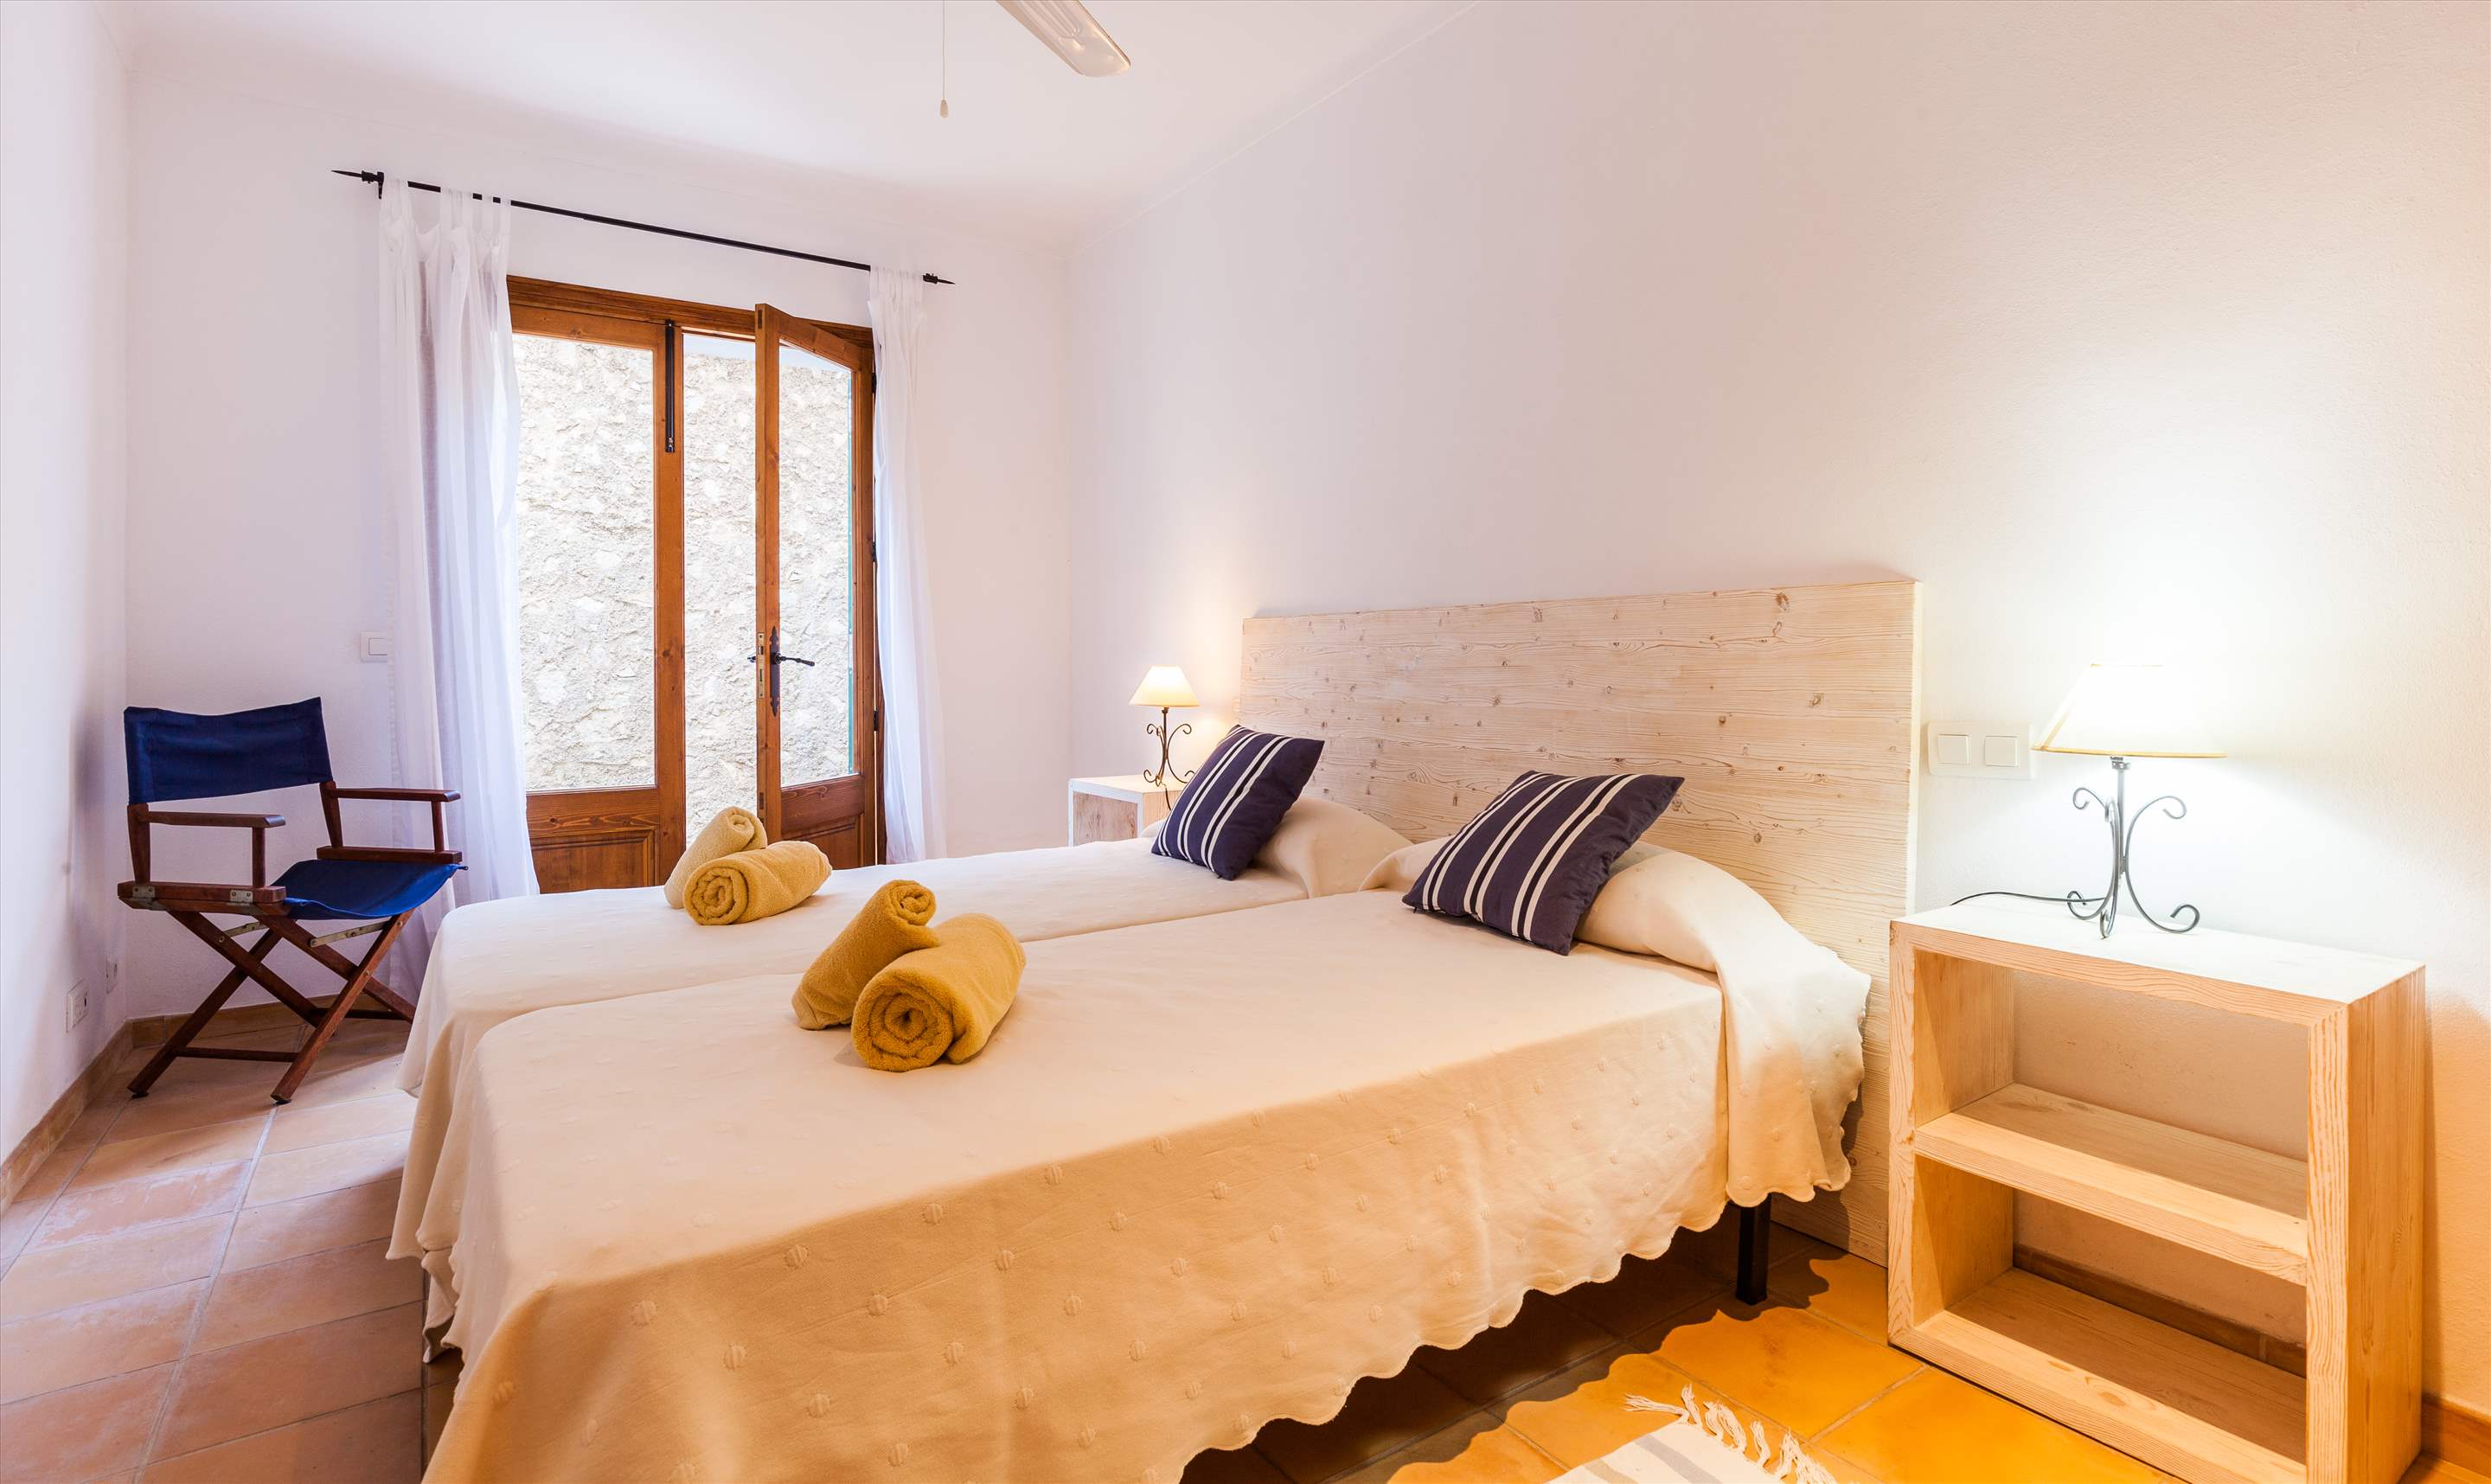 Villa Ca'n Teulada, 9-12 persons, 6 bedroom villa in Pollensa & Puerto Pollensa, Majorca Photo #21